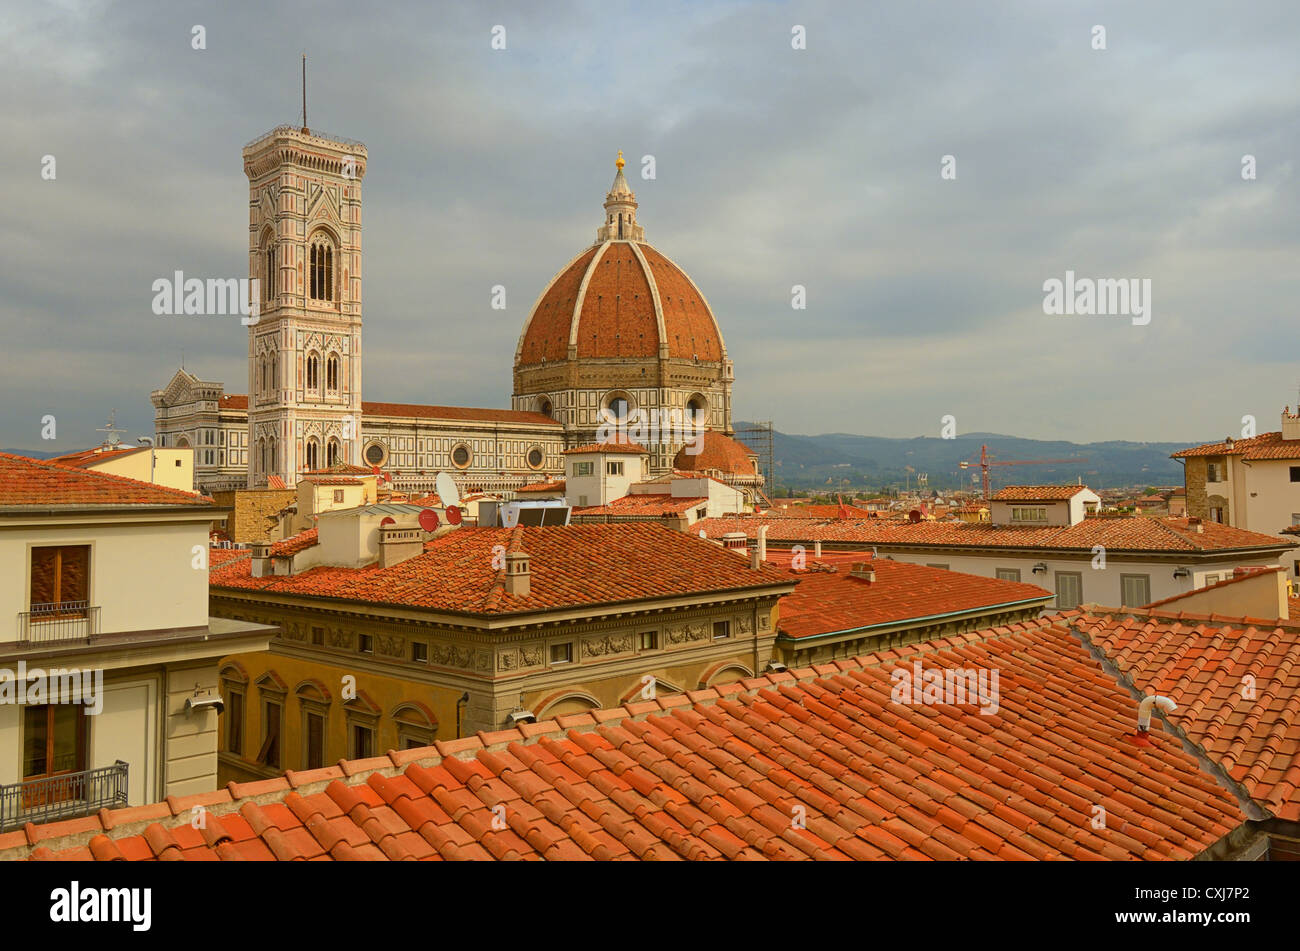 Der Campanile und die Kuppel der Kathedrale von Florenz (Firenze) über die Dächer der Stadt zu sehen. Stockfoto